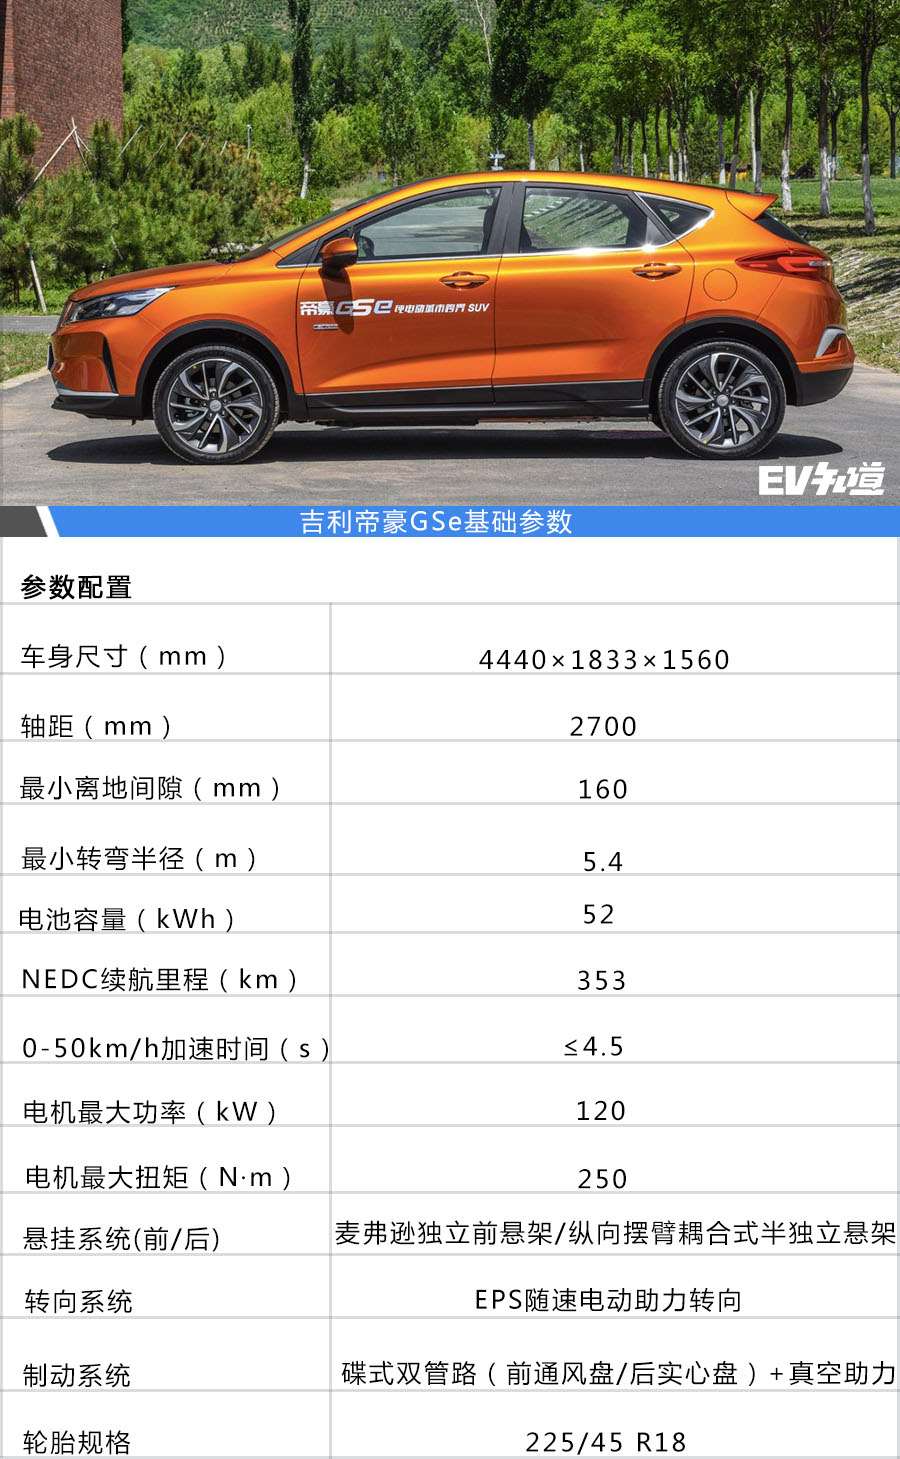 首推12.58万元领尚型 帝豪GSe购车手册